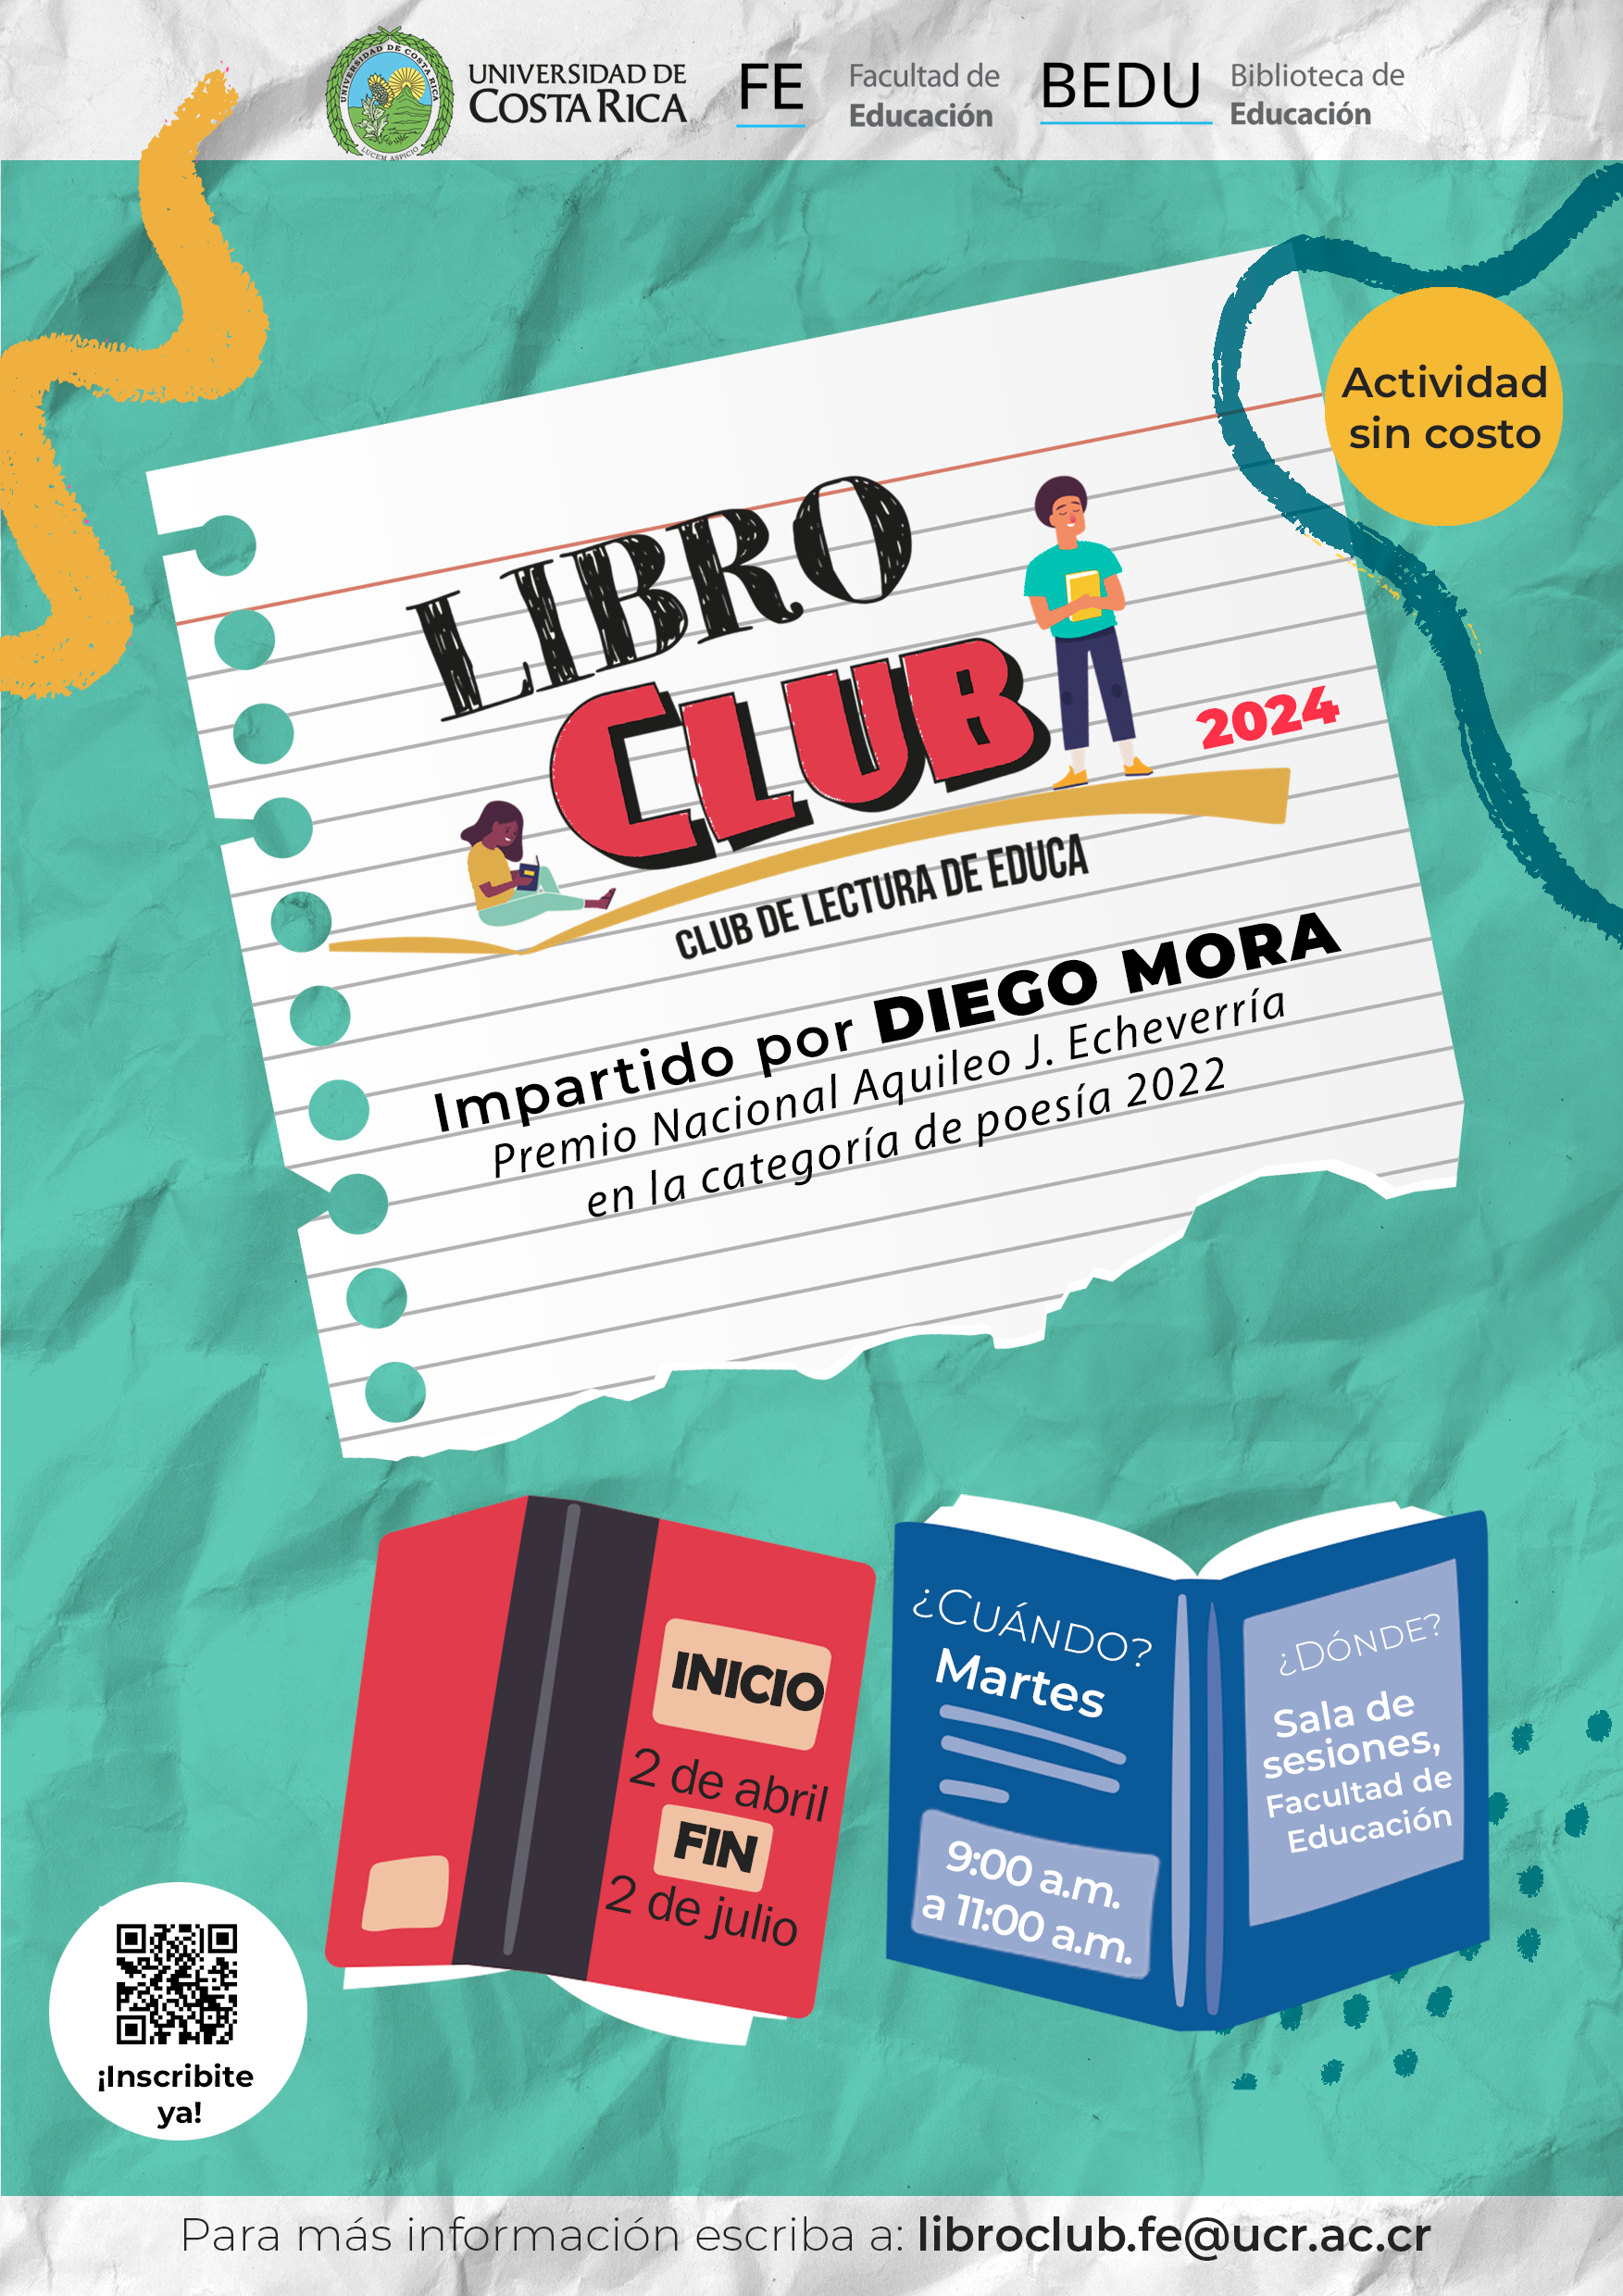 LibroClub Facultad de Educación UCR 